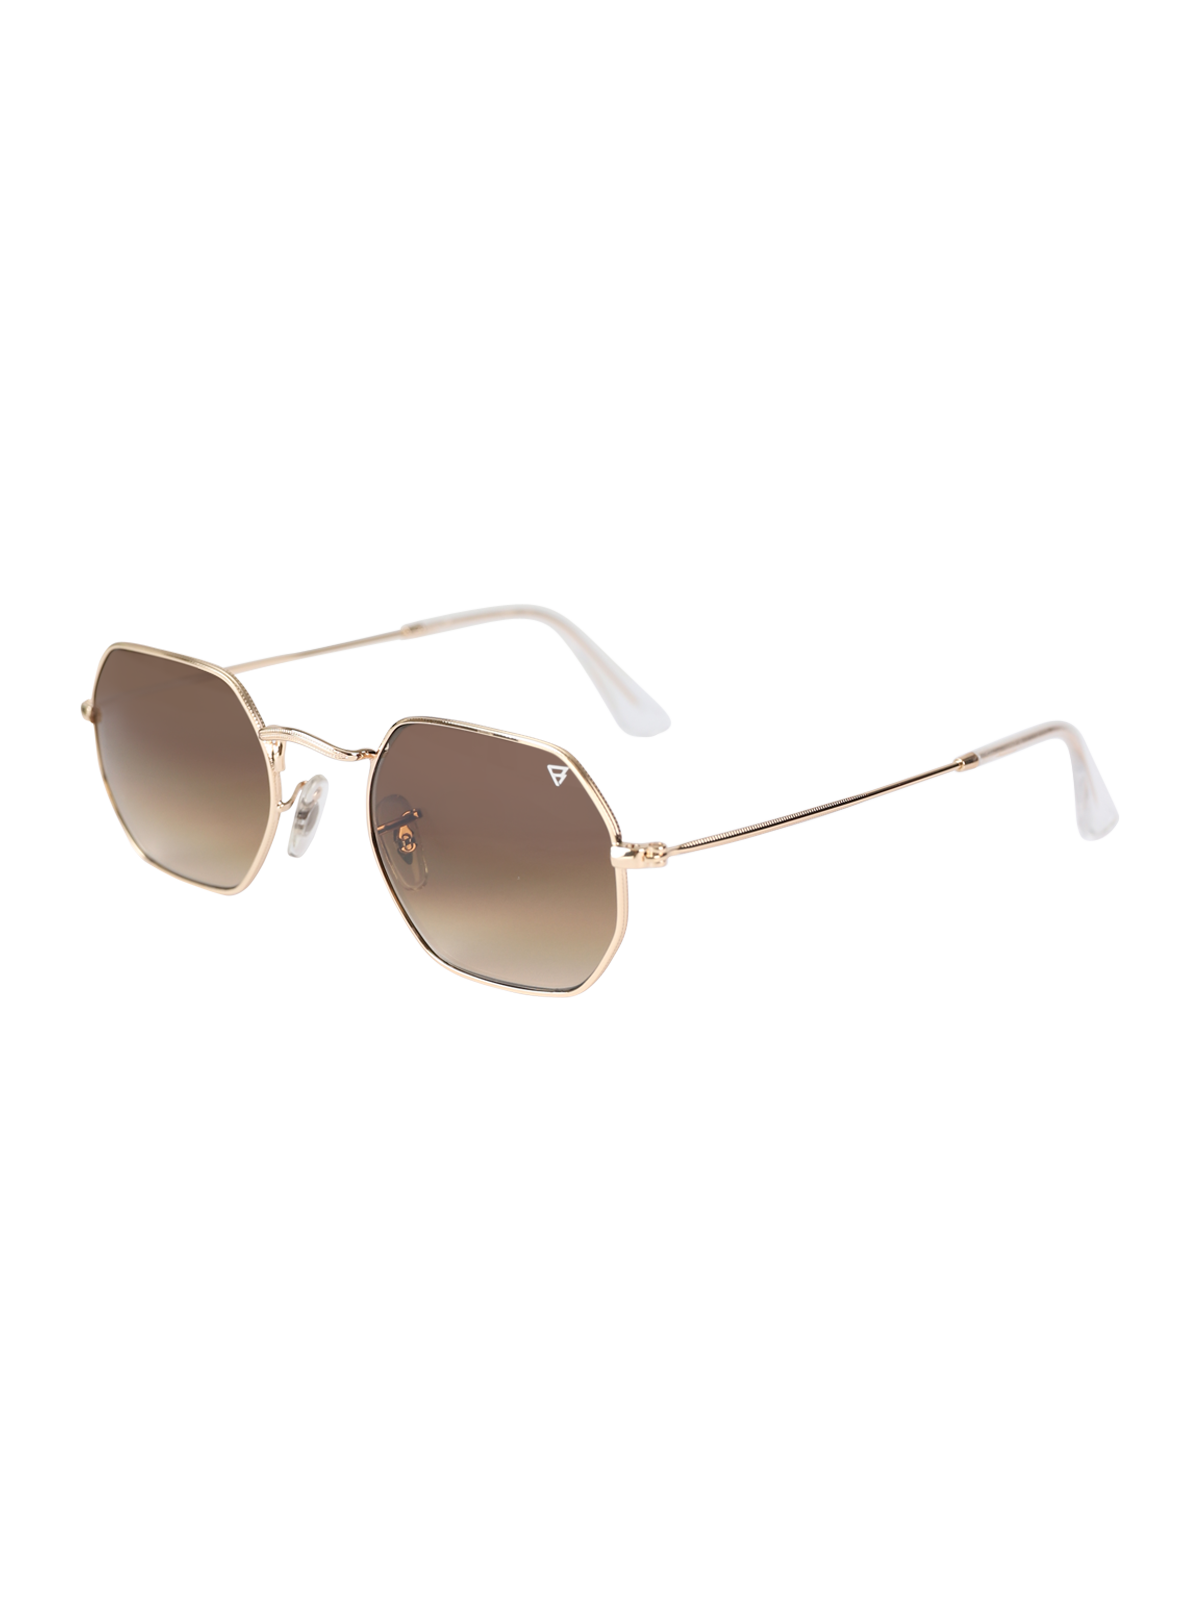 Biarritz Unisex Sunglasses | Gold